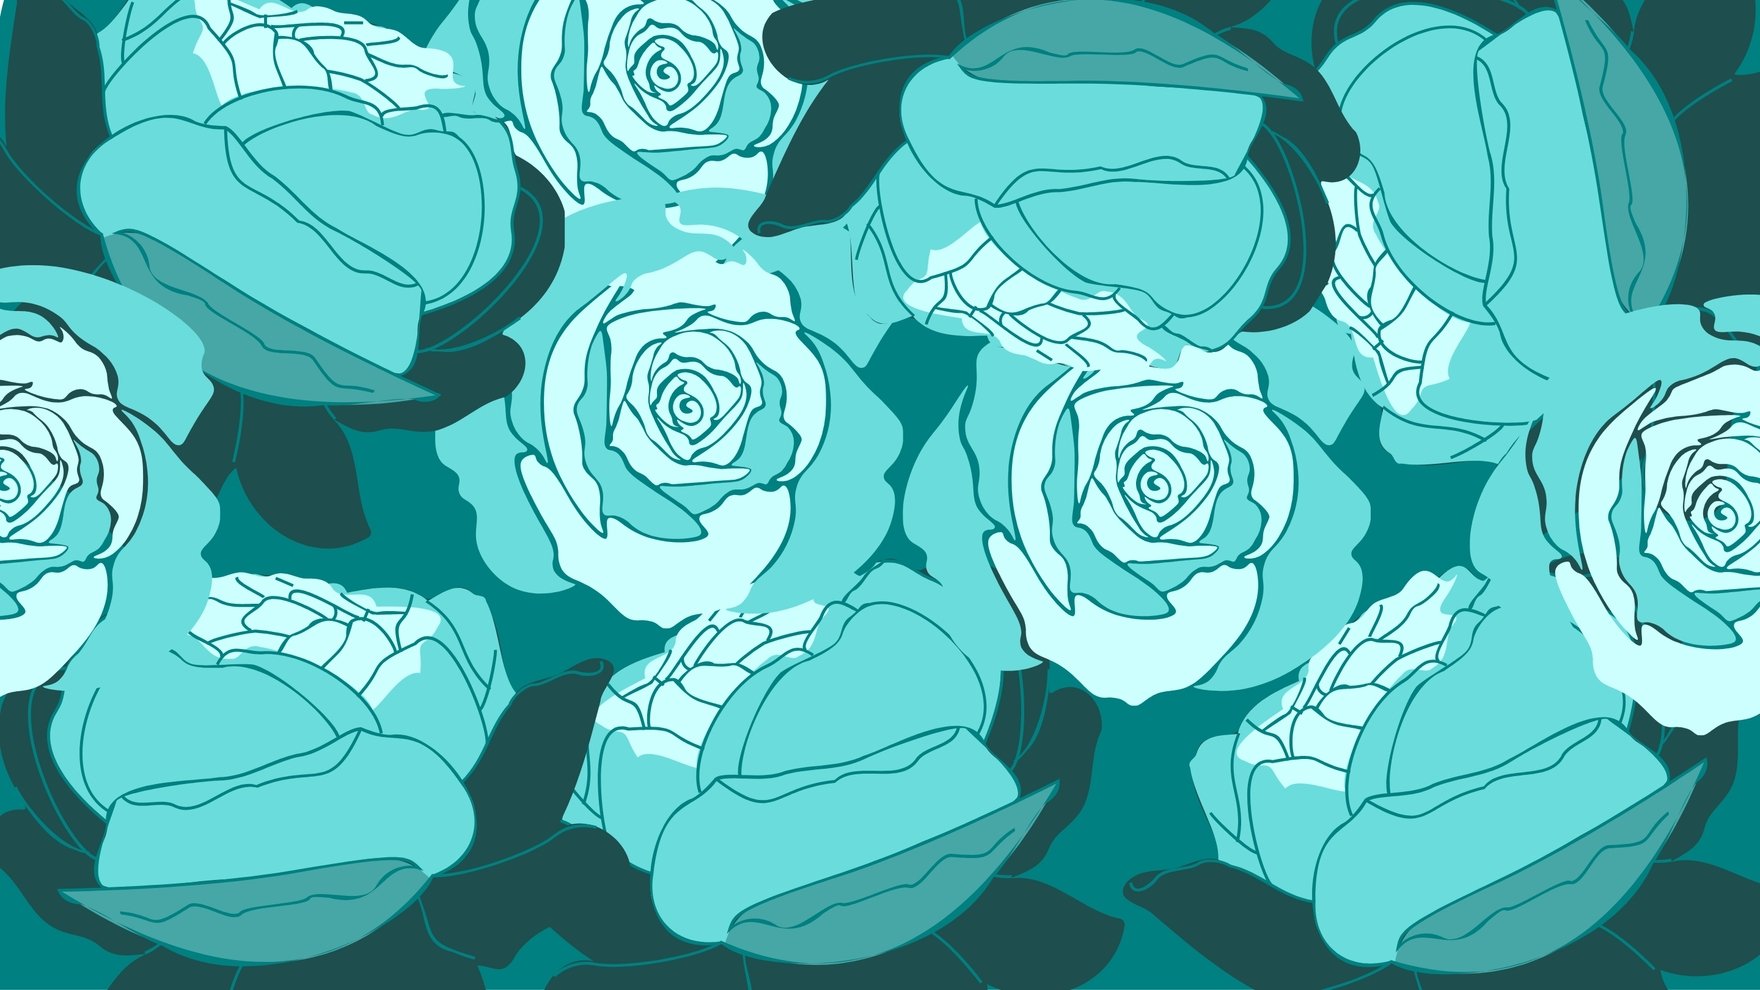 Free Teal Roses Background in Illustrator, EPS, SVG, JPG, PNG